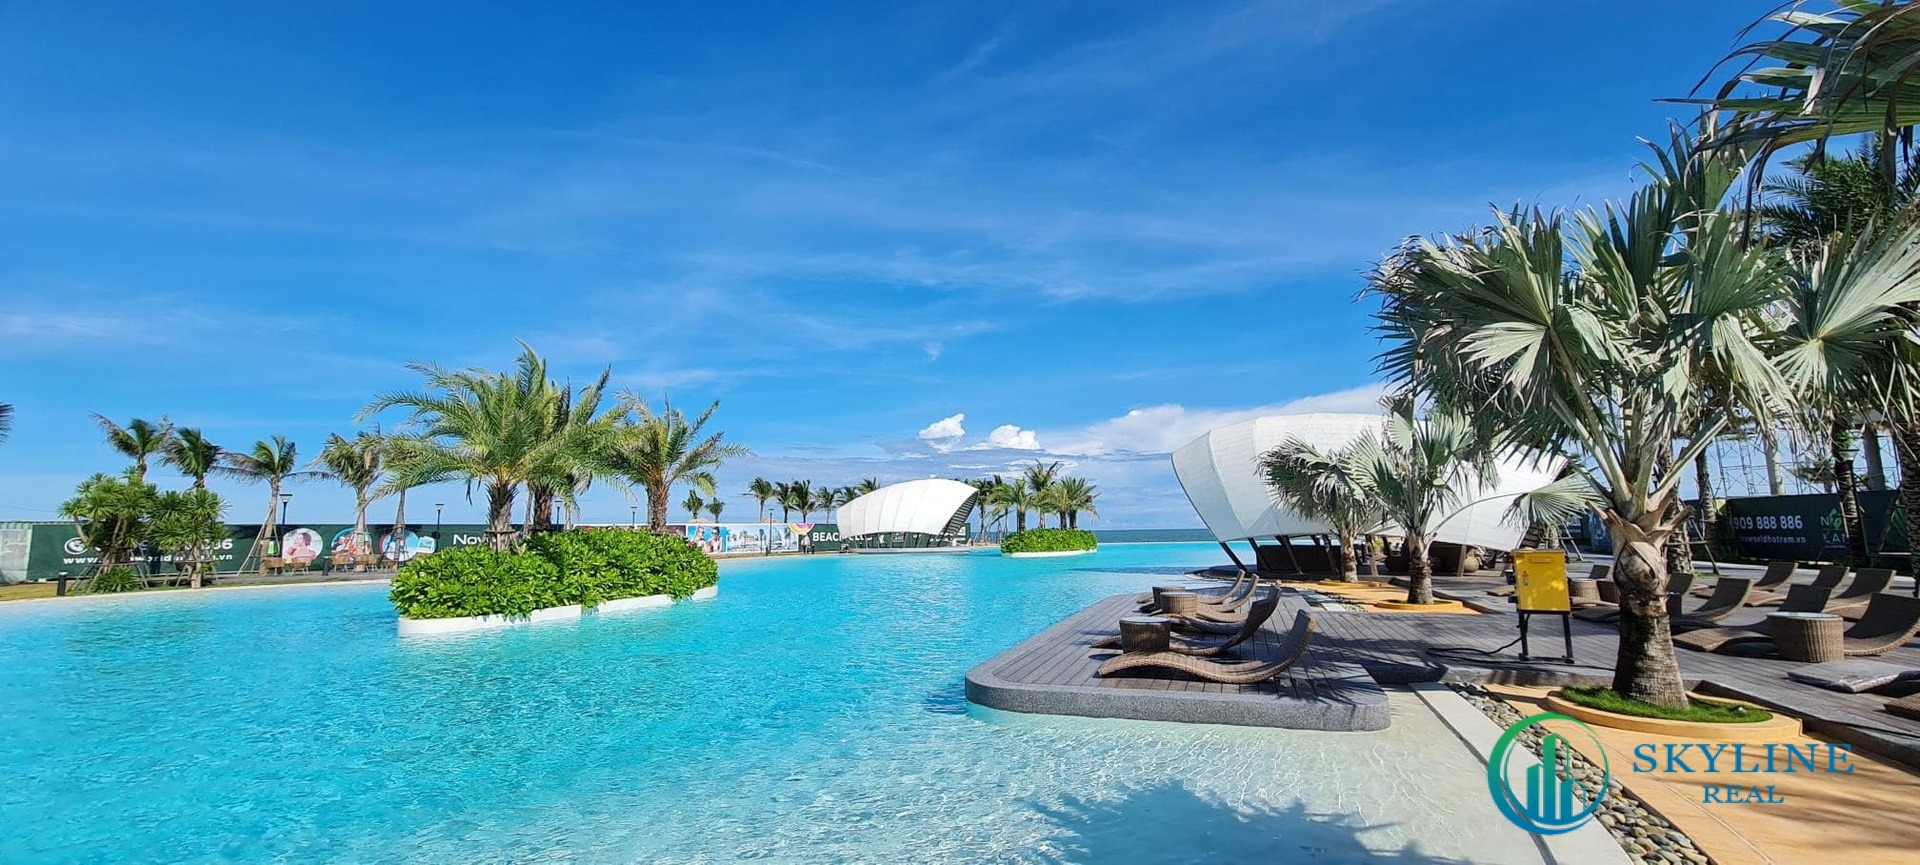 Ocean Pool rộng 5.000 m2 sát bờ biển sẵn sàng chào đón du khách và khách hàng.